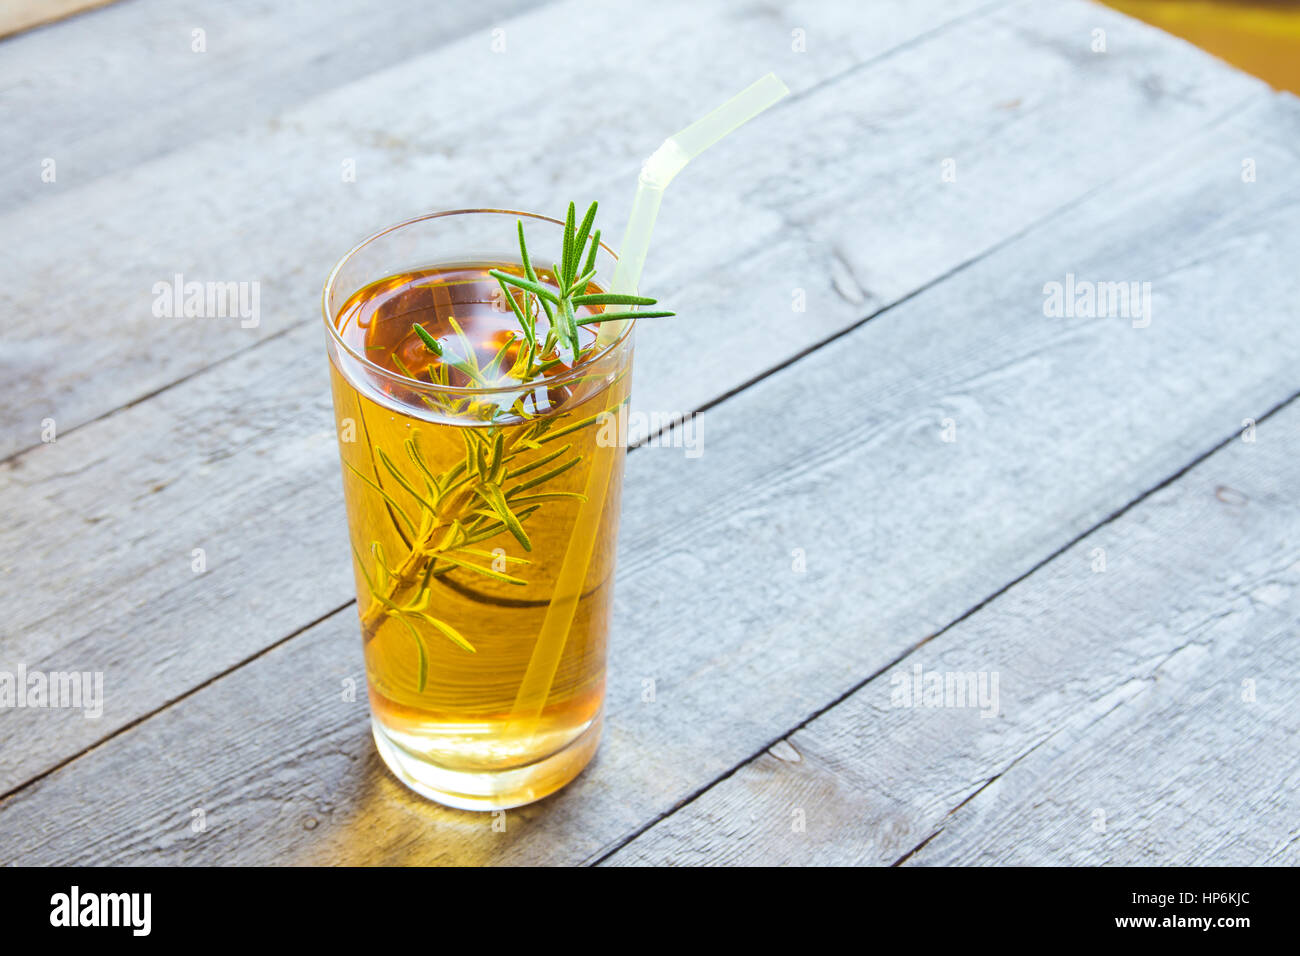 Thé Kombucha pro super aliments boissons biotiques dans les verres au romarin sur fond de bois - maison organique saine boisson probiotique fermenté Banque D'Images